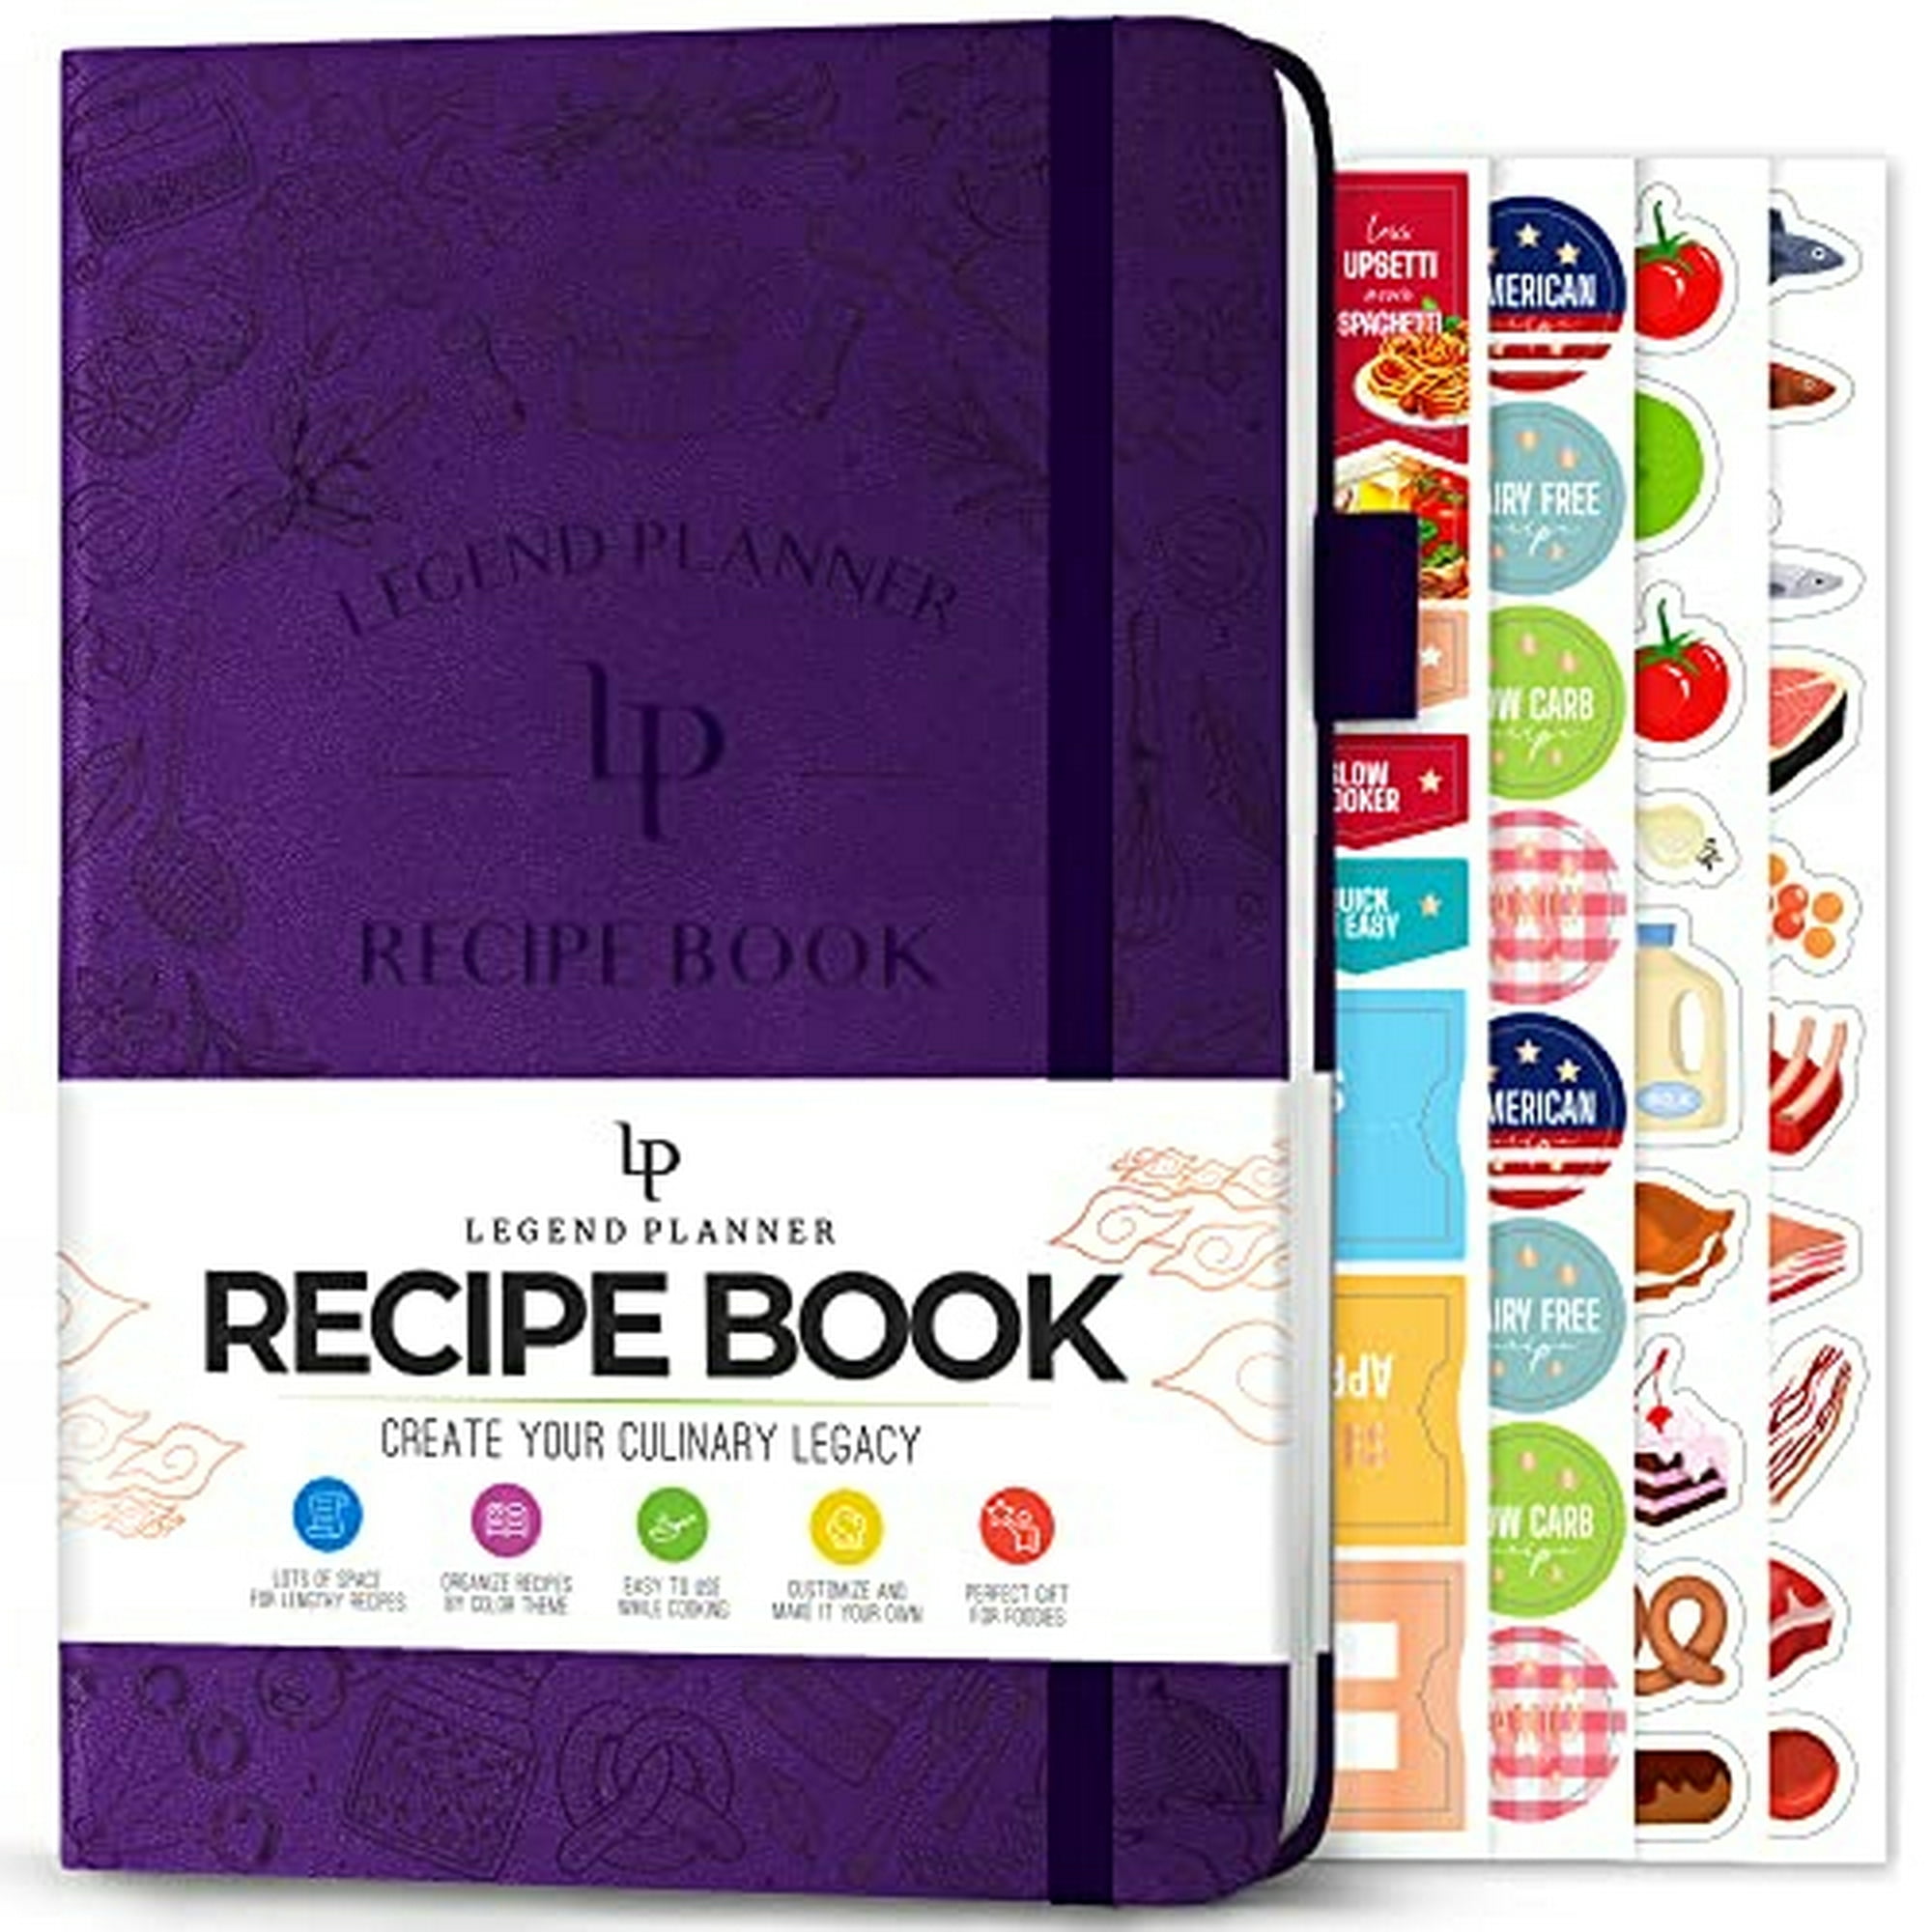 Cuaderno Recetas Cocina Recetario Variado Bazar Trendy